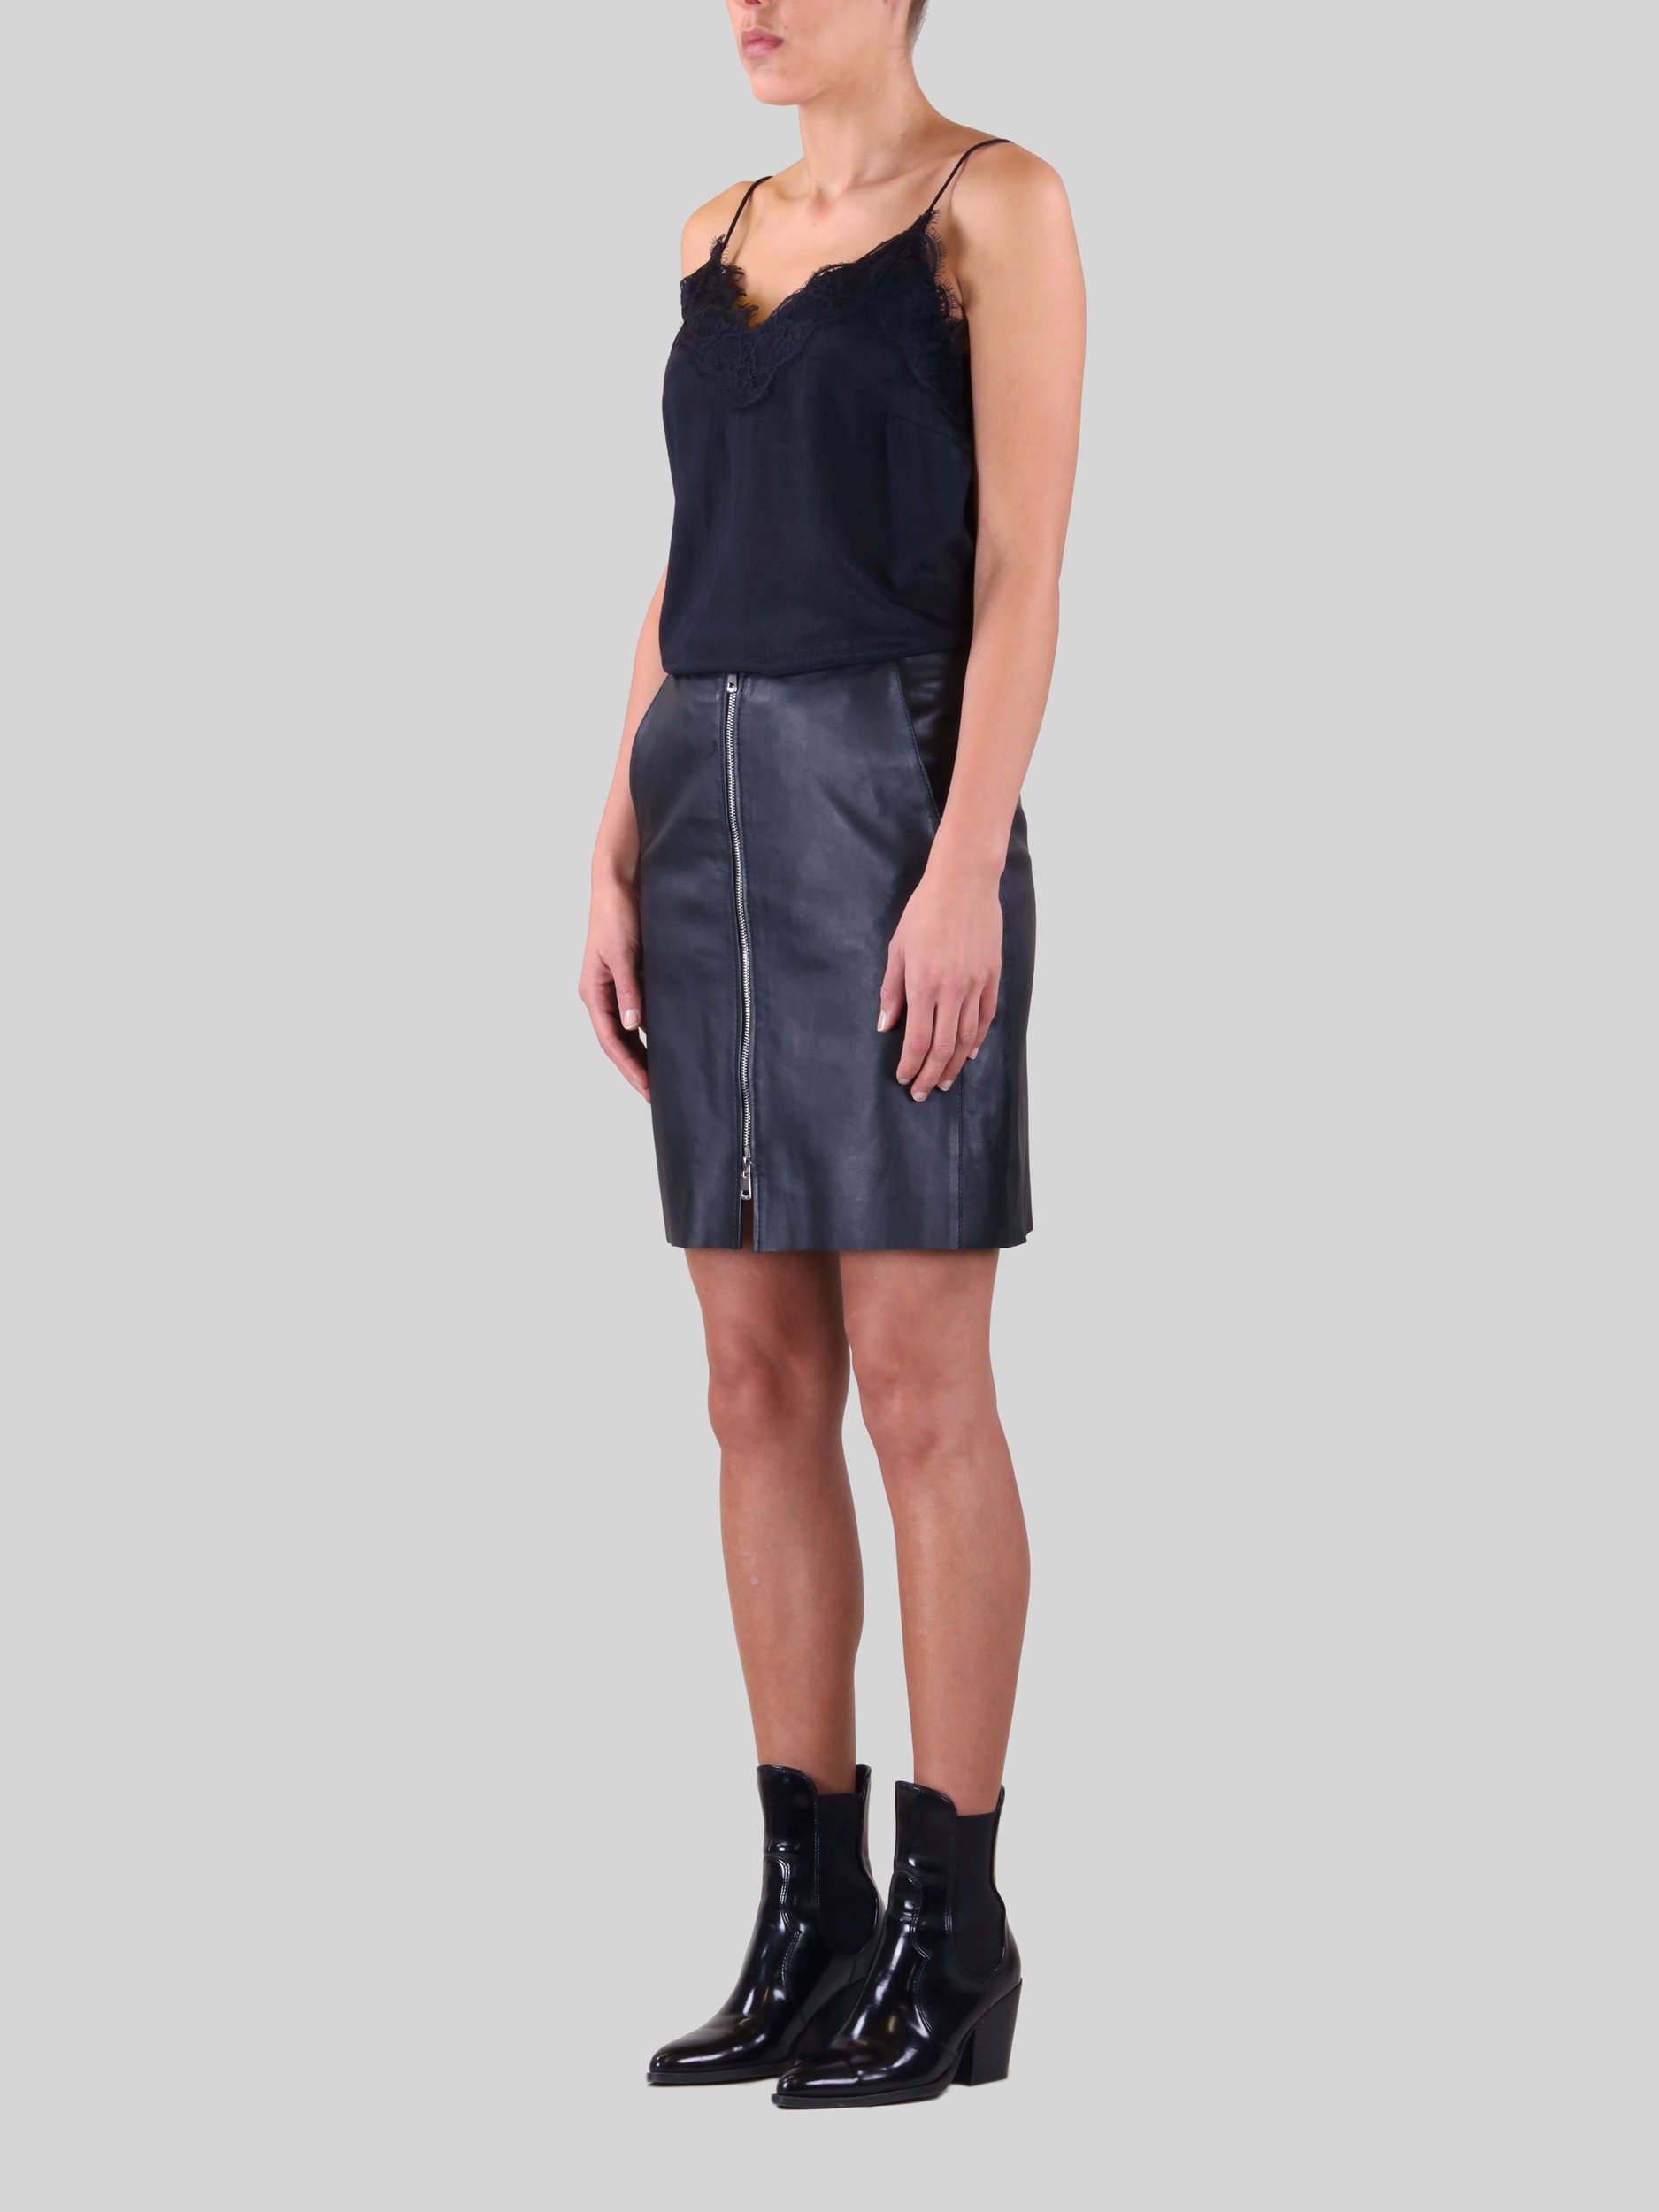 Rino & Pelle — Cade Zipped Leather Skirt